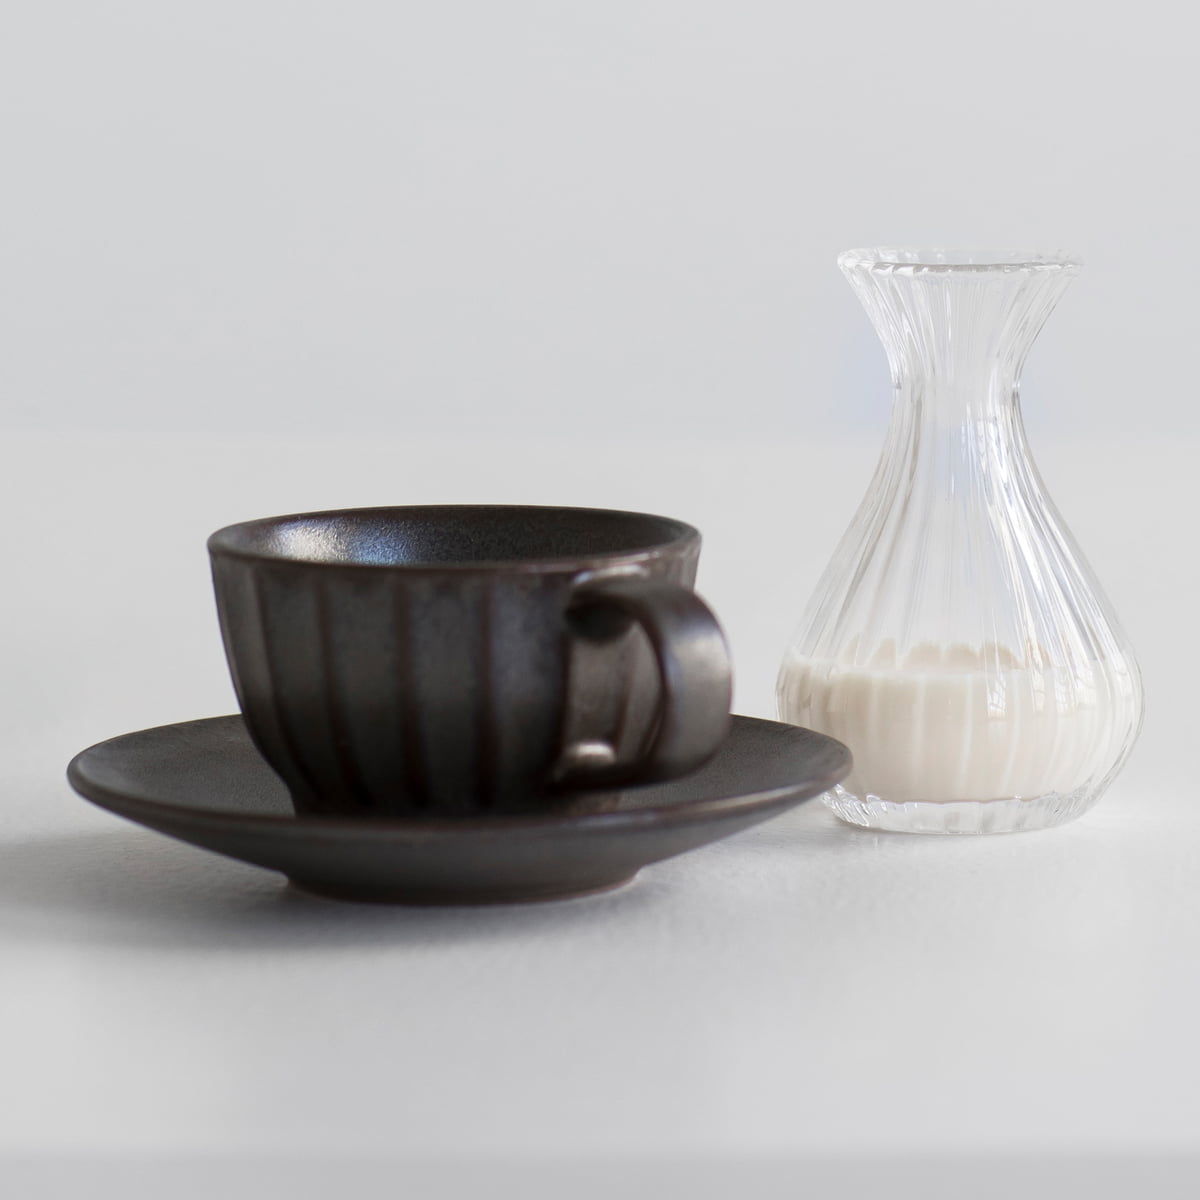 Inku Scalloped Ceramic Coffee Cup & Saucer Set, Mug for Espresso